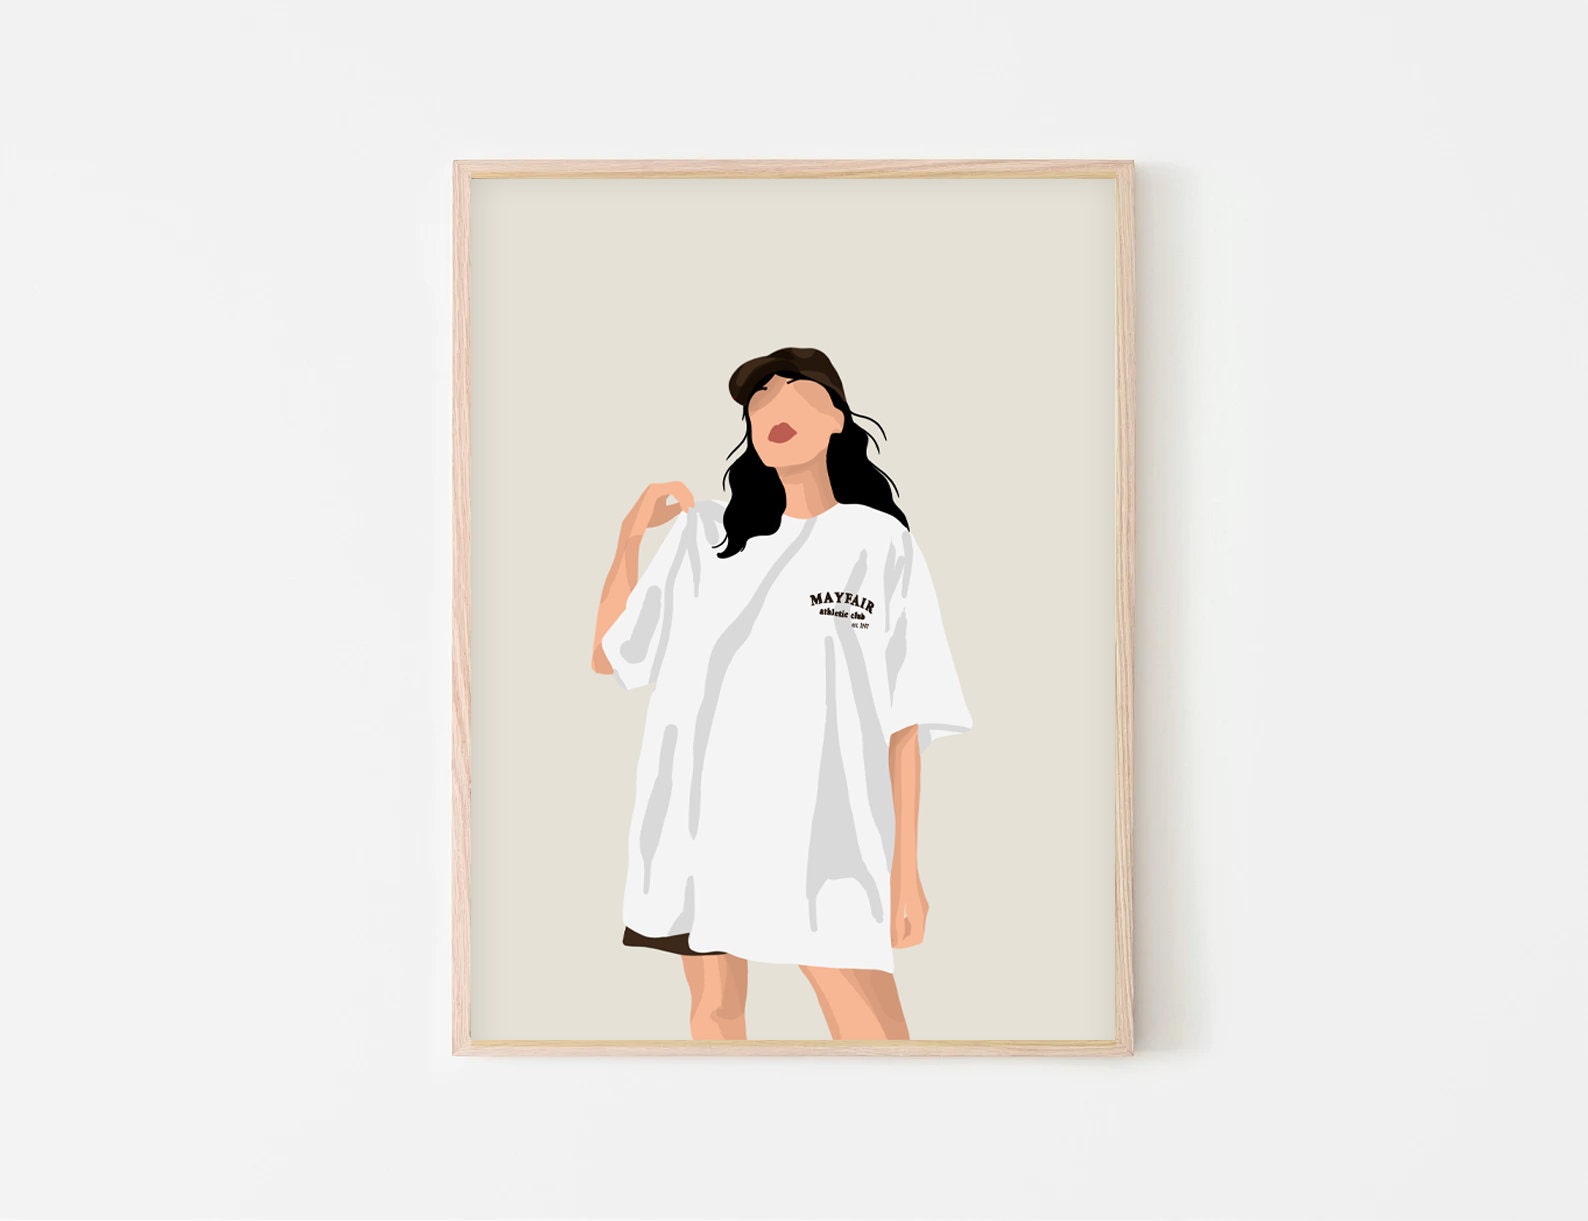 Girl Oversized T-shirt Illustration Poster INSTANT Digital Wall Art ...